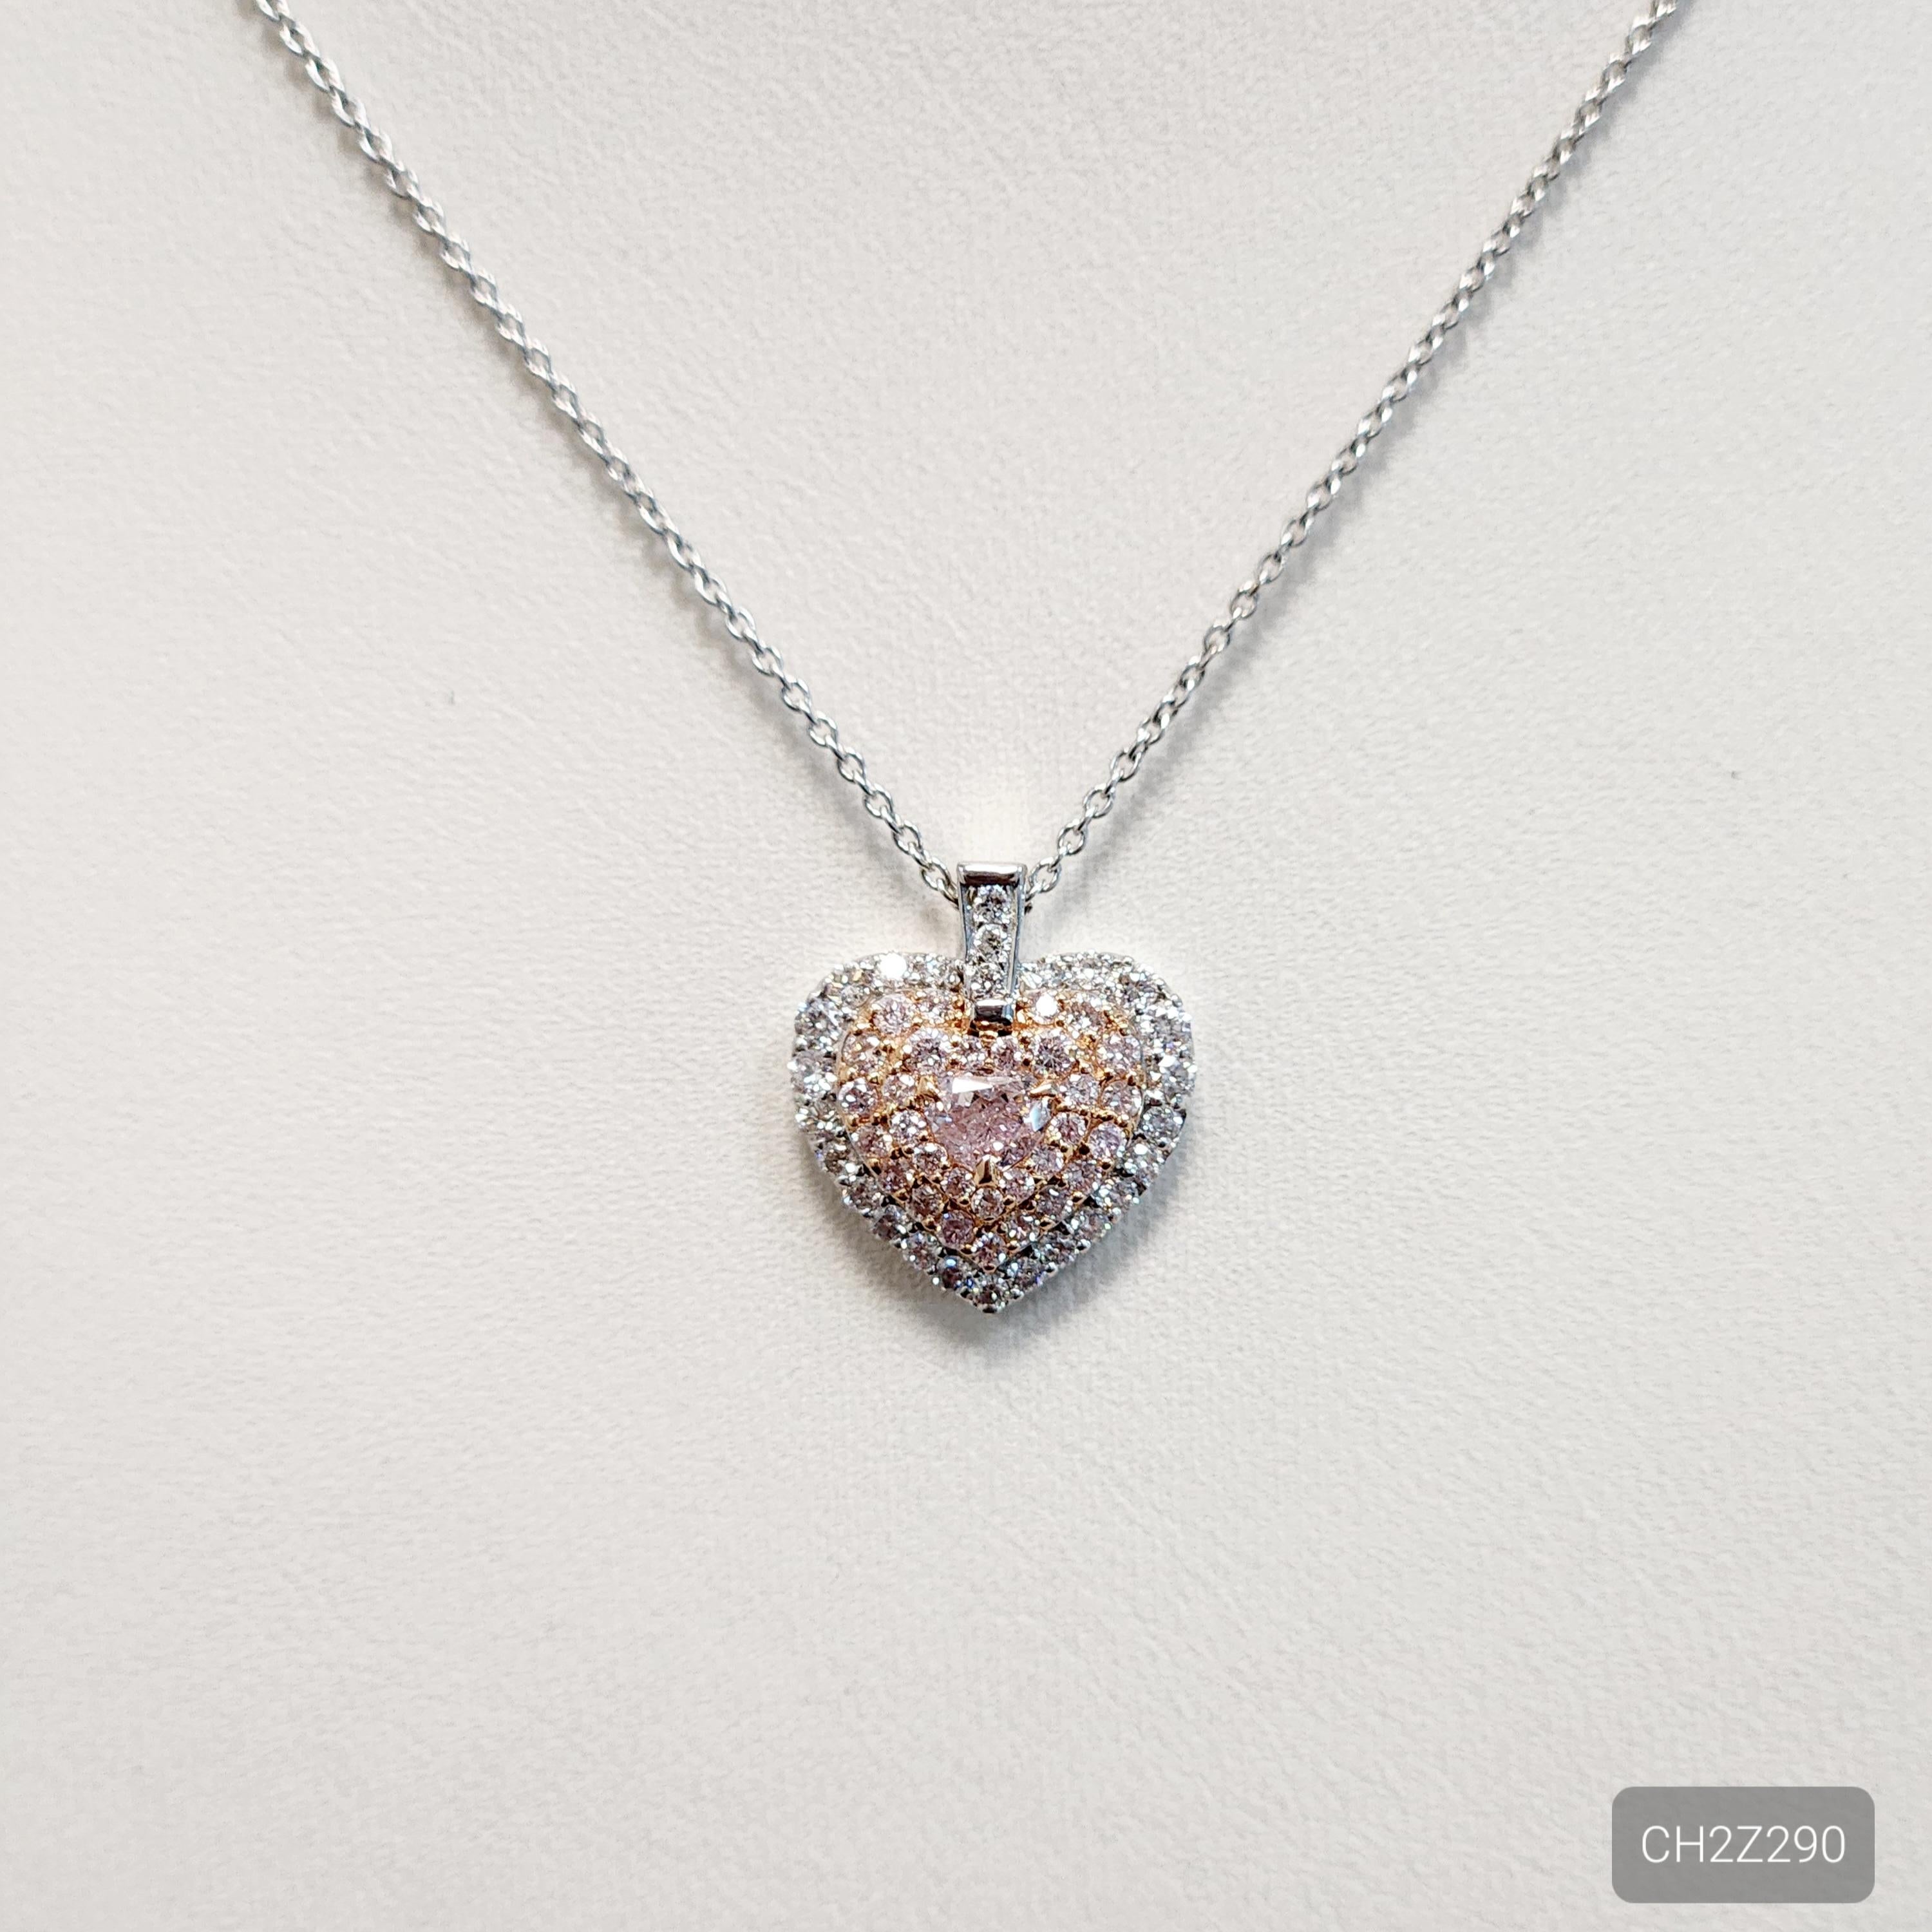 Le collier-chaîne diamant rose en forme de cœur est un bijou saisissant qui met en valeur un magnifique diamant rose en forme de cœur de 0,20 carat entouré d'un halo de diamants blancs de 0,21 carat et de diamants roses en forme de mèle de 0,24